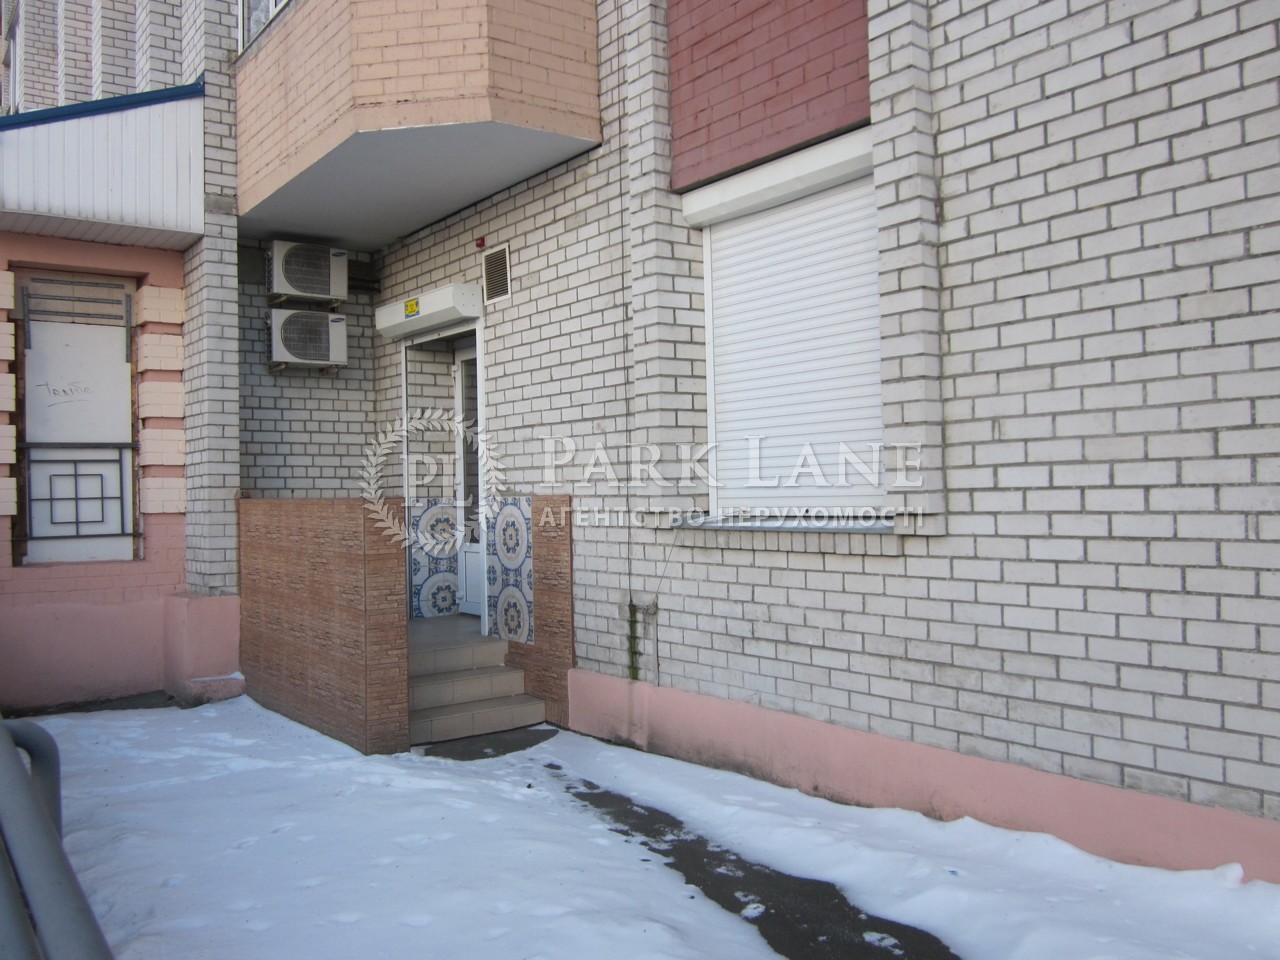  Нежилое помещение, ул. Алматинская (Алма-Атинская), Киев, G-713329 - Фото 19